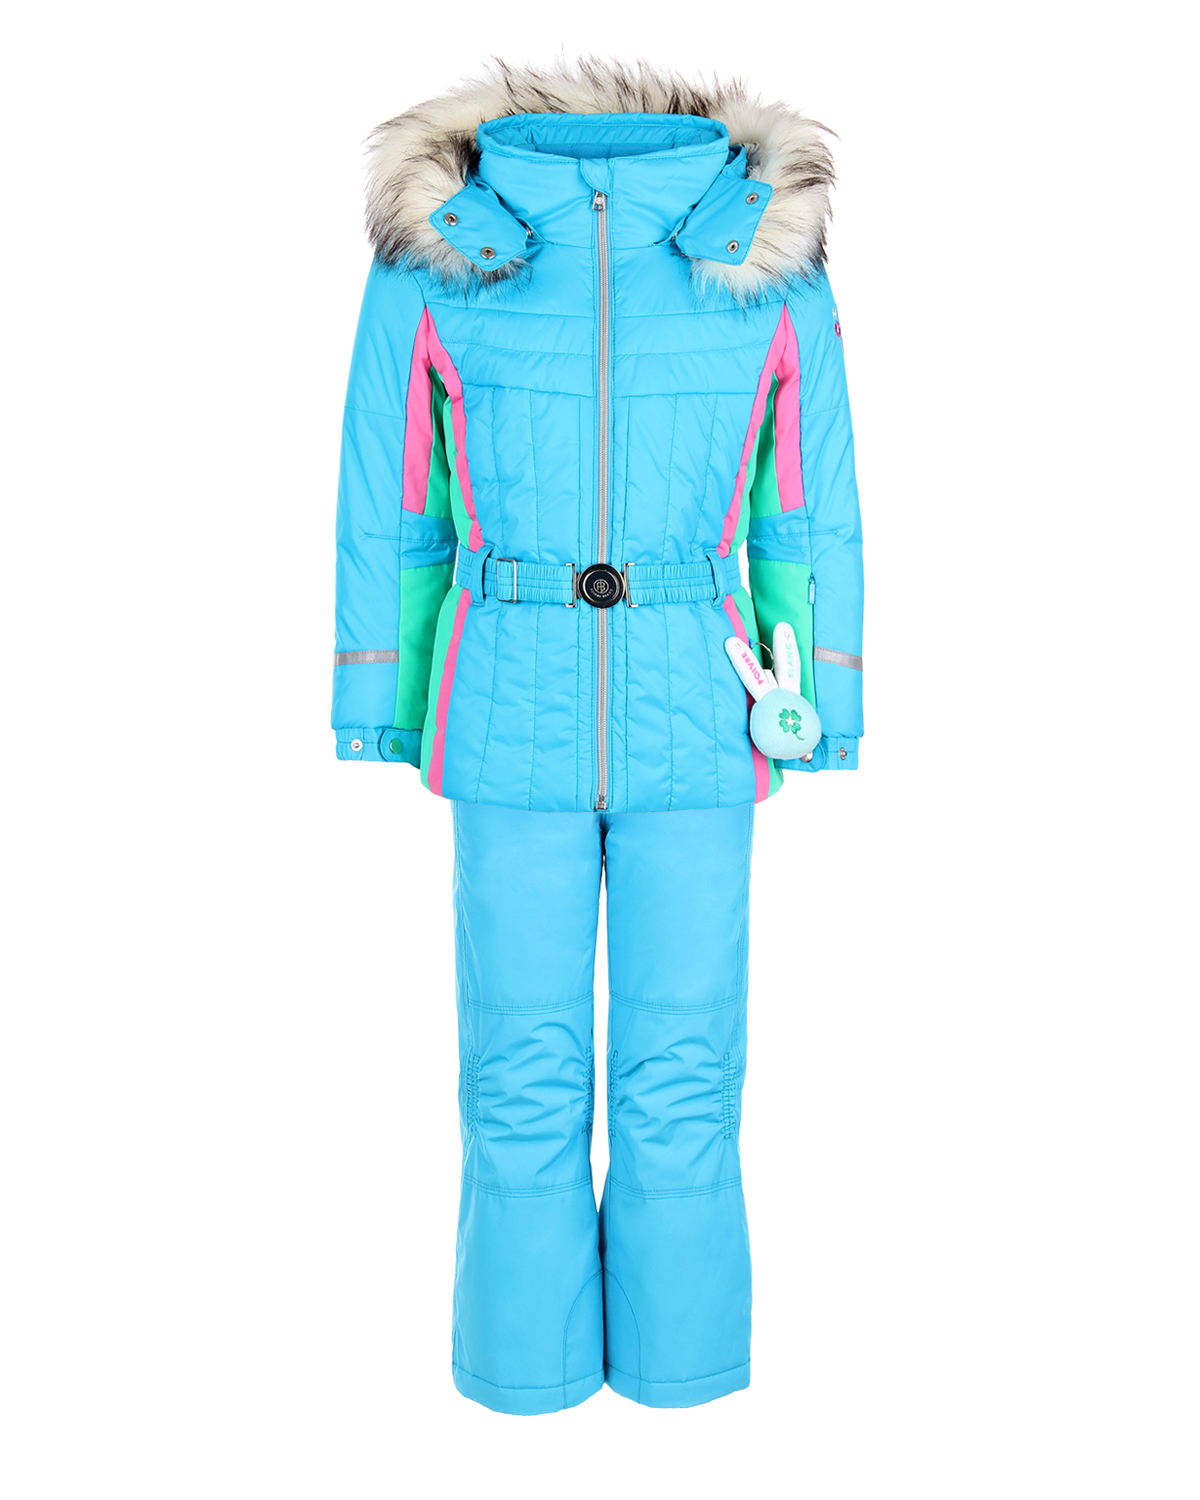 Комплект, куртка и полукомбиезон, голубой с вышивкой Poivre Blanc